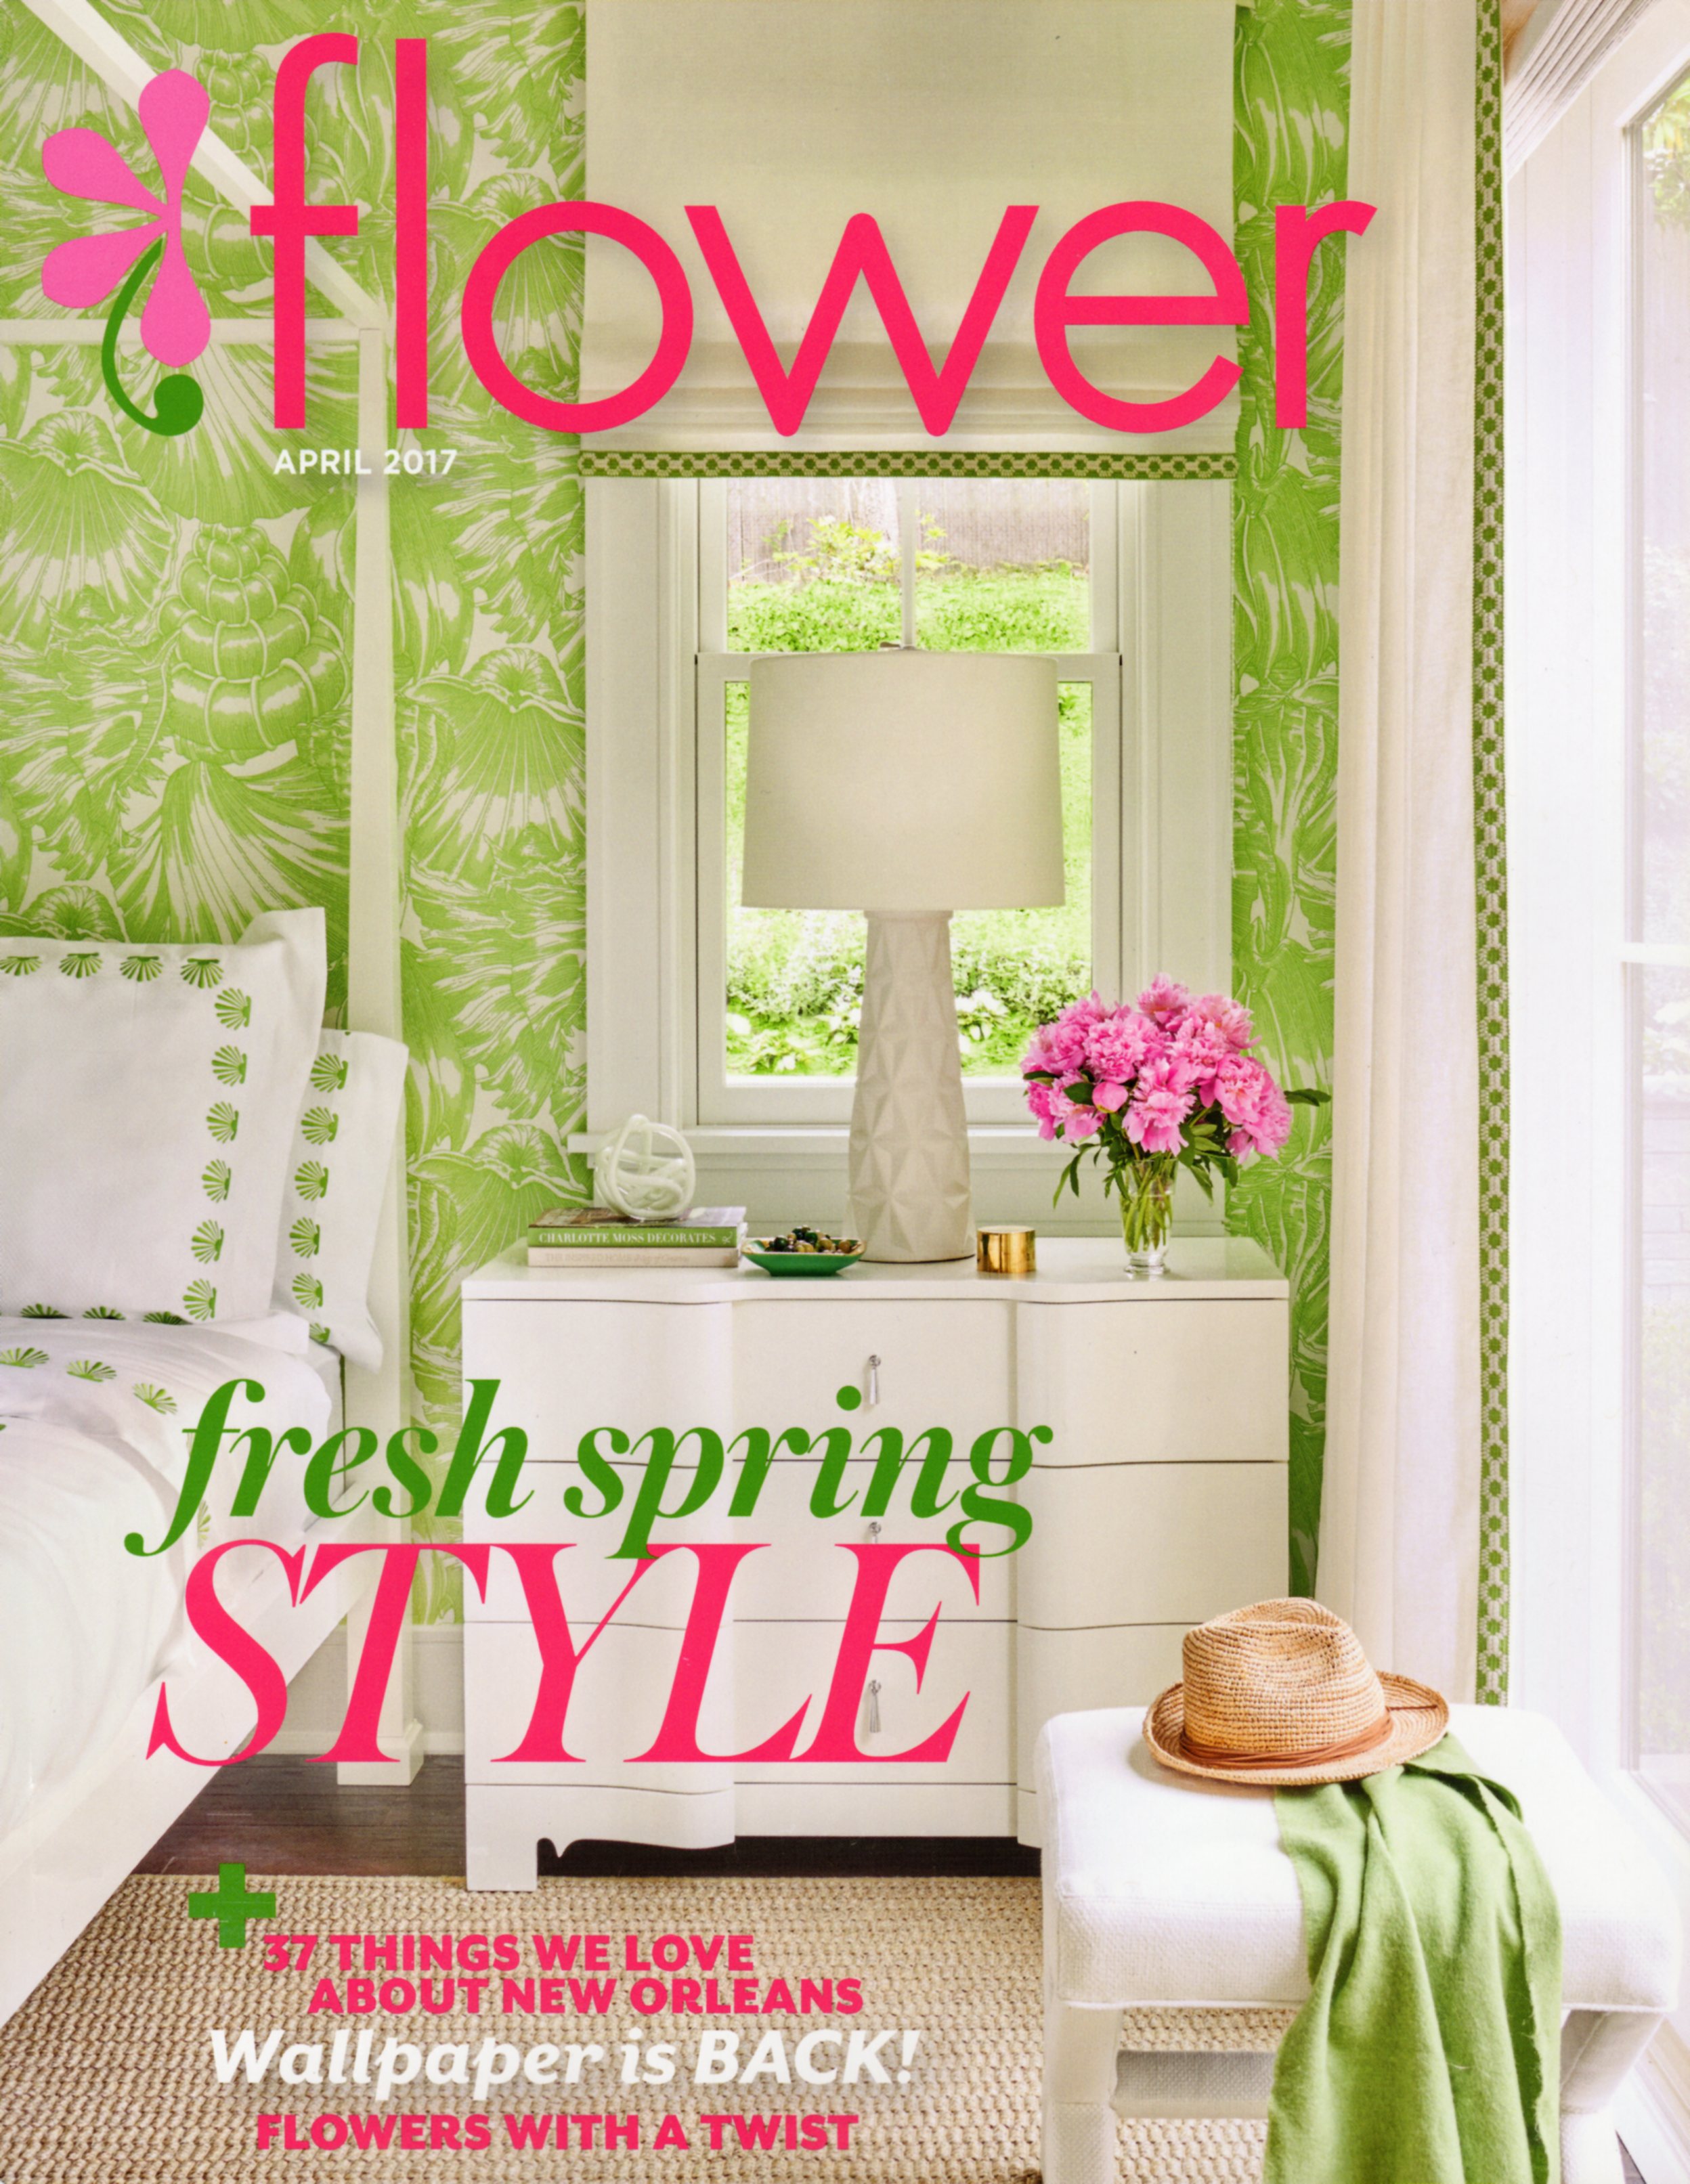 Flower Magazine April 2017 cover.jpg